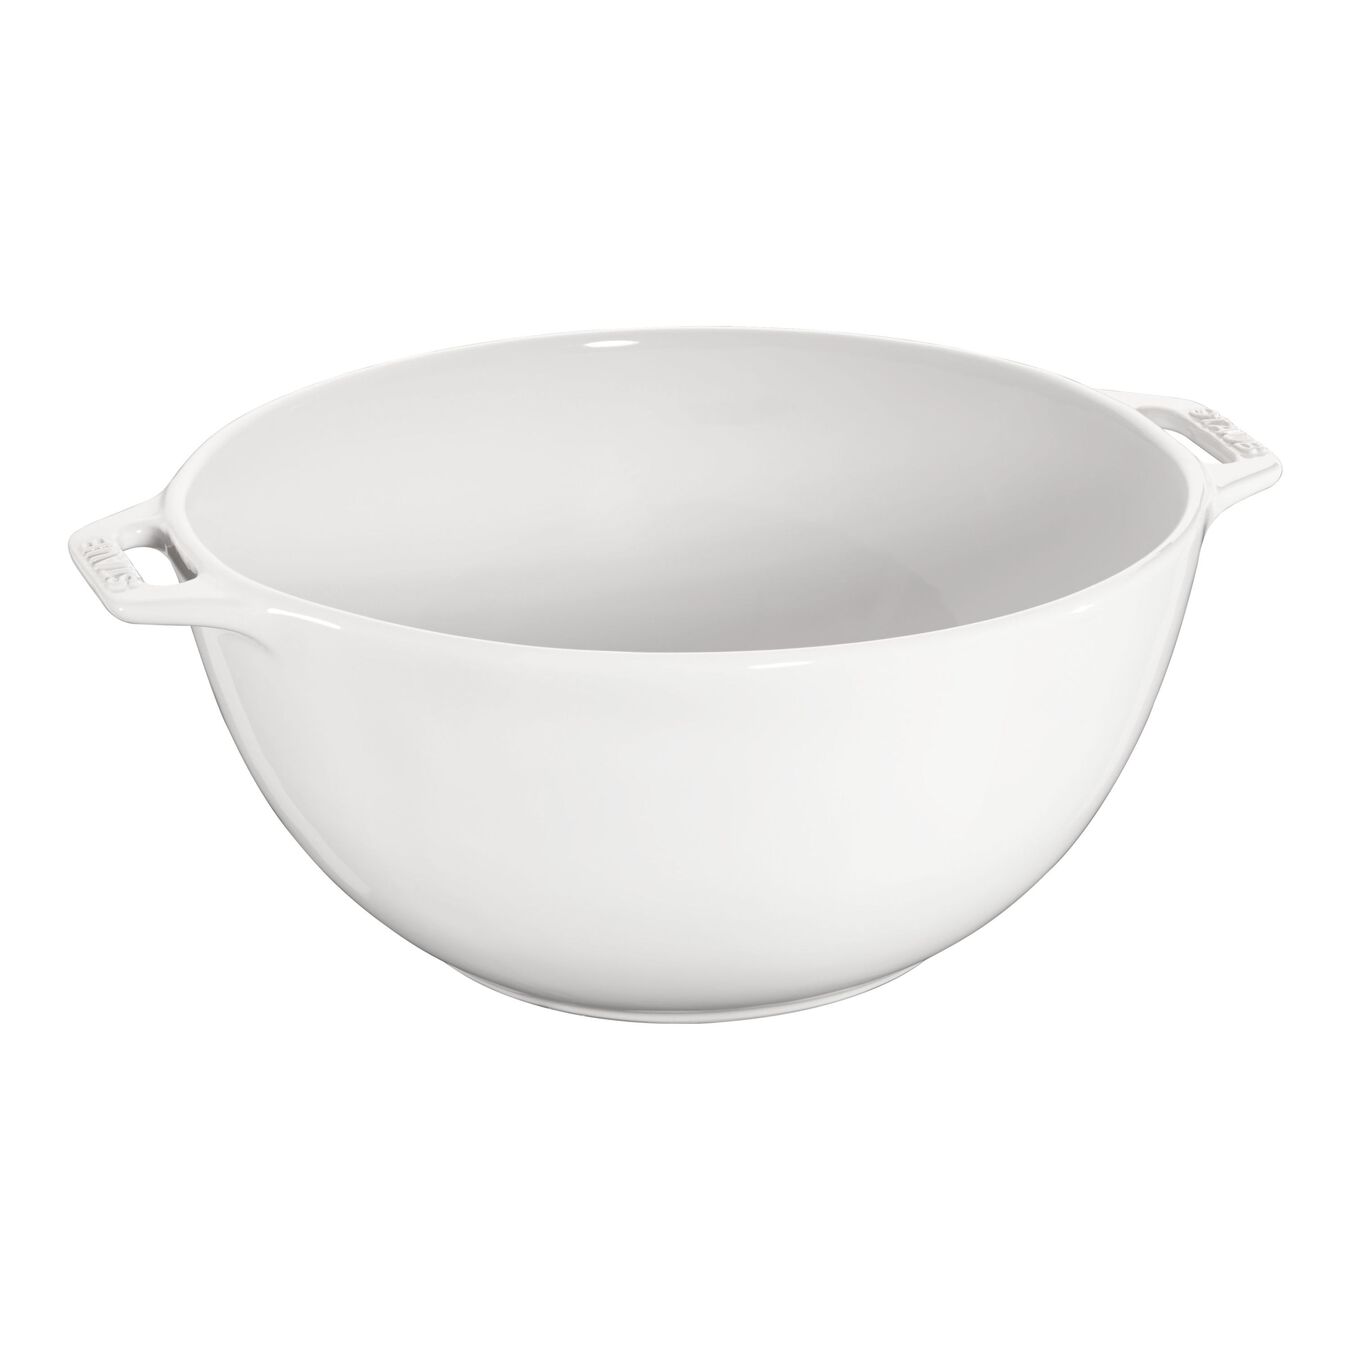 24 cm ceramic round Bowl, pure-white,,large 1